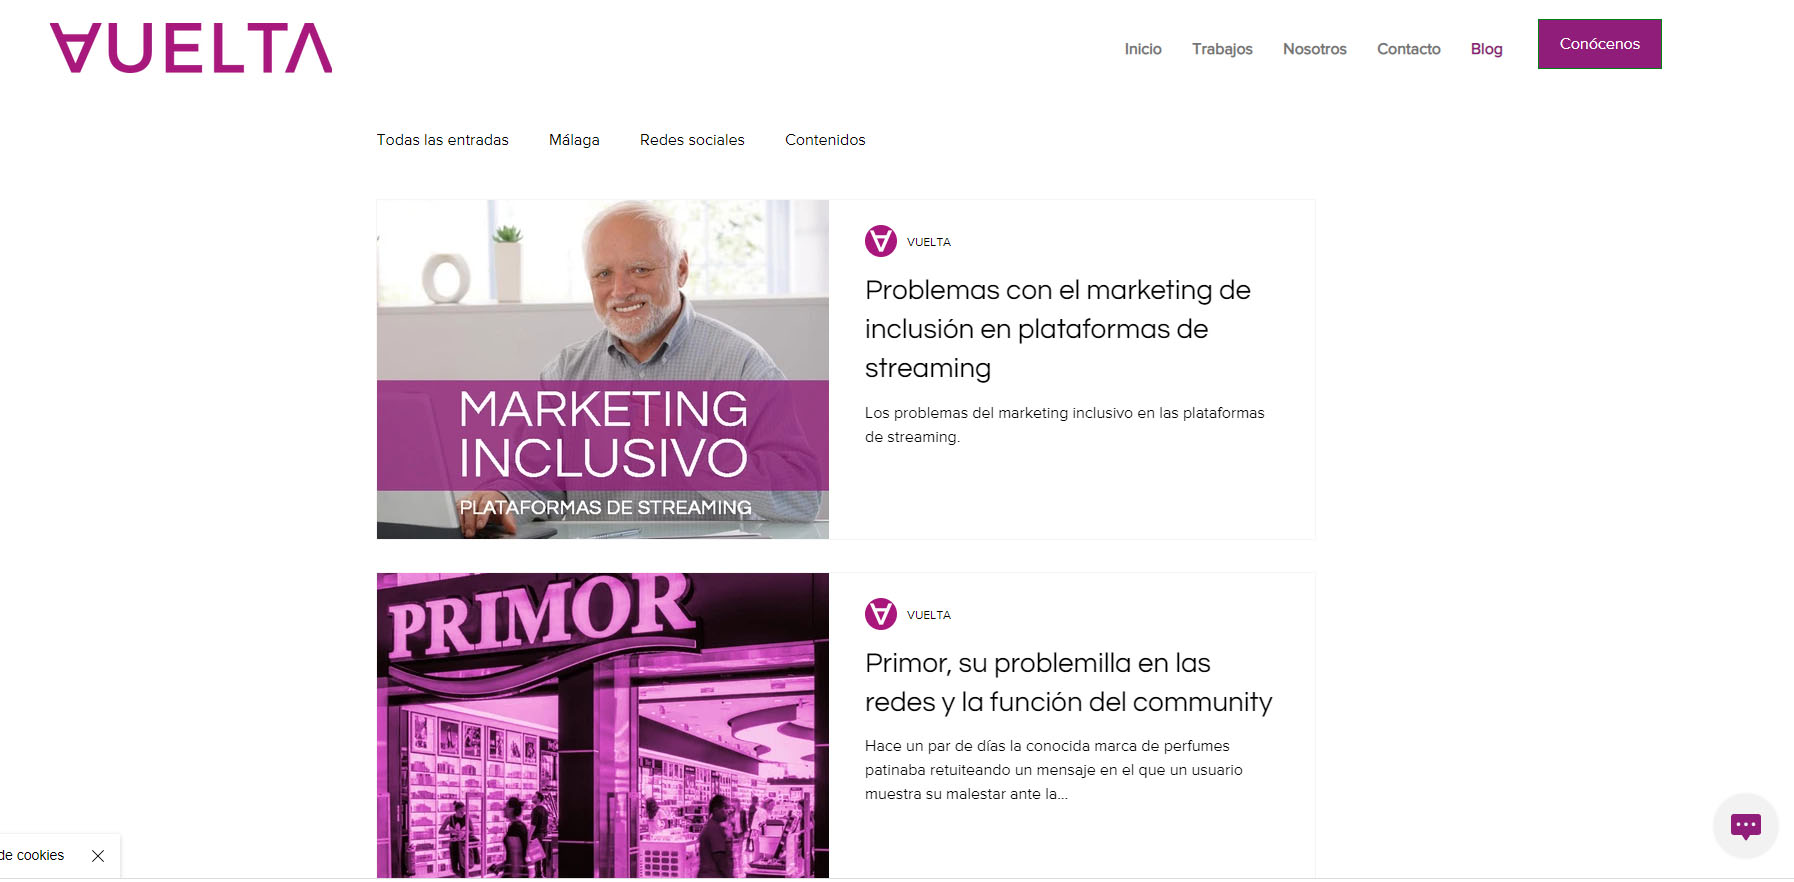 Buscador blog - VUELTA l Blog sobre marketing. en Bitakoras